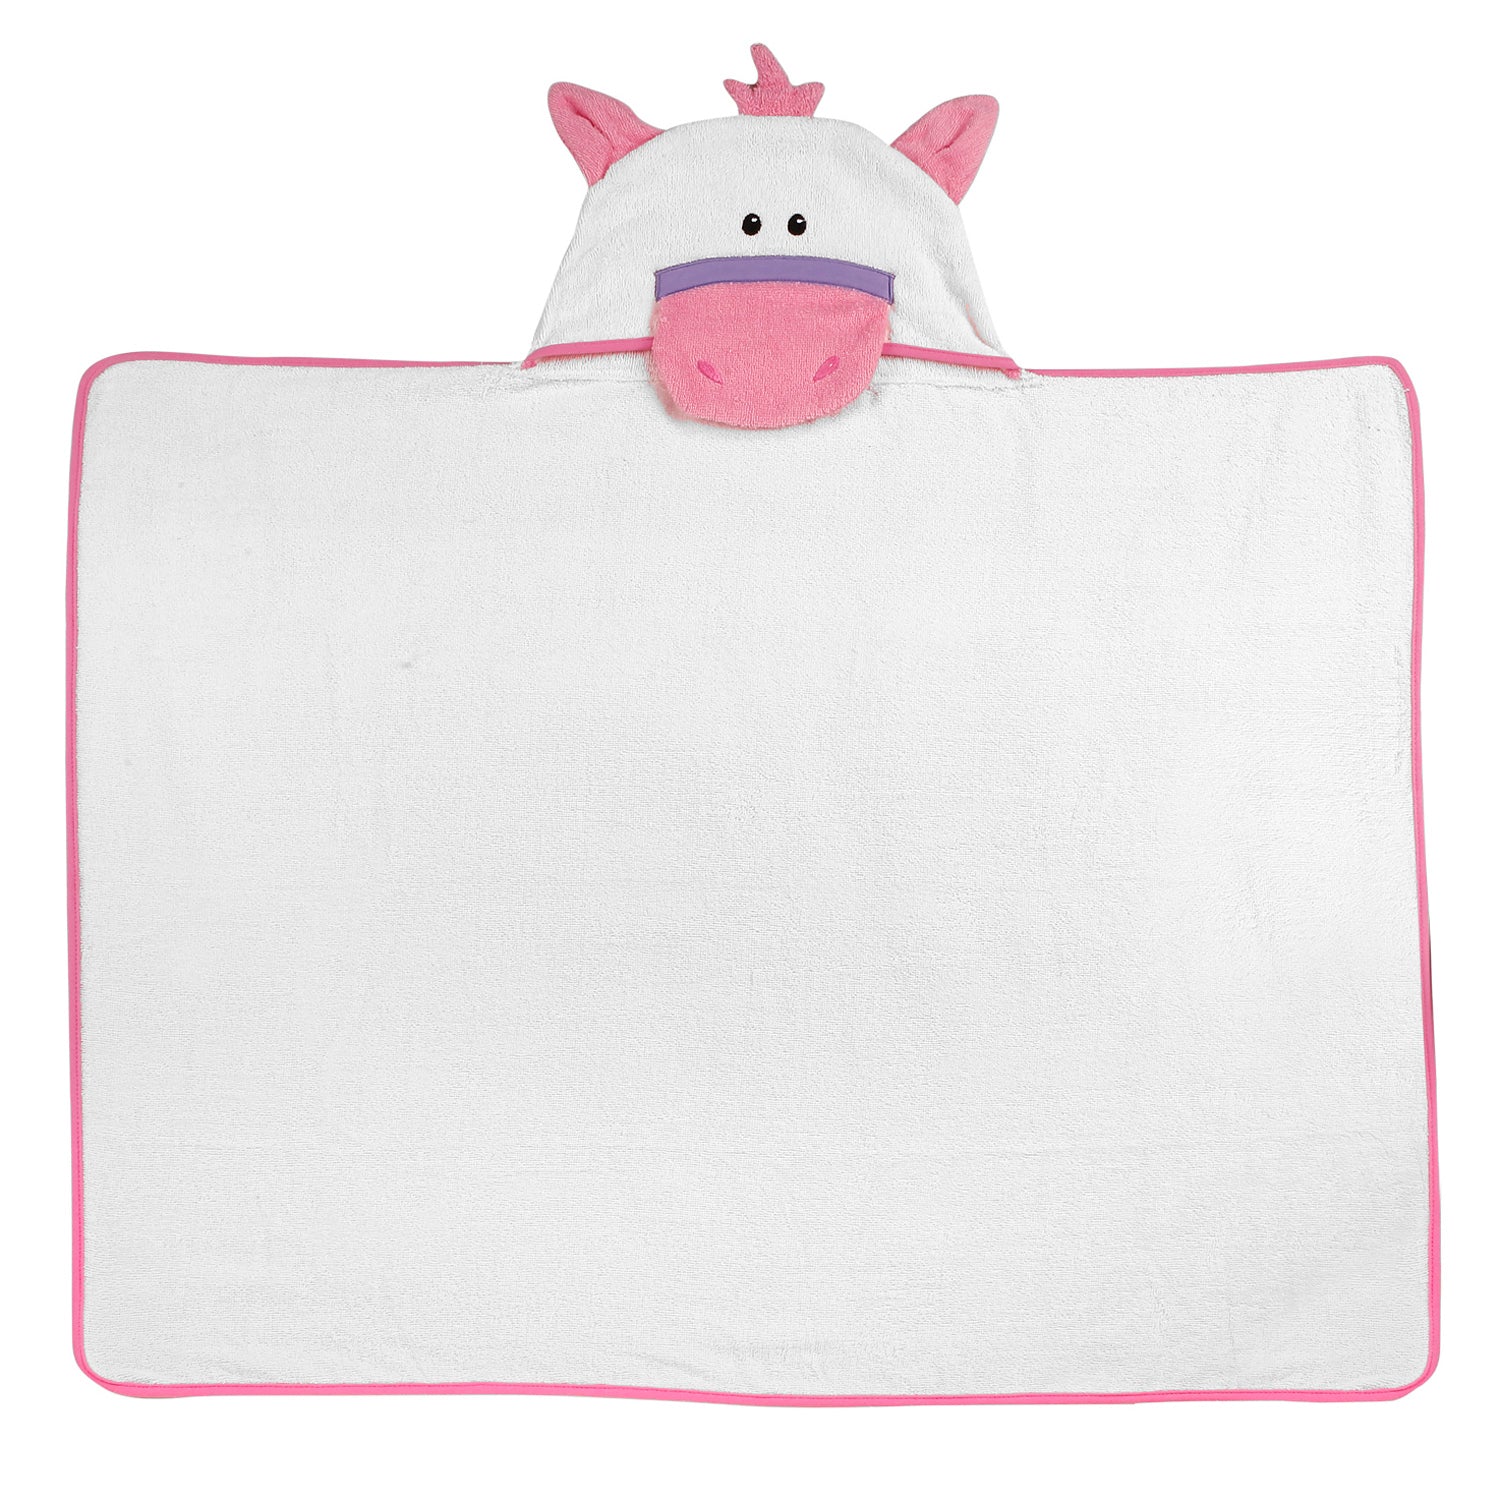 Cute Pink Hooded Towel - Baby Moo